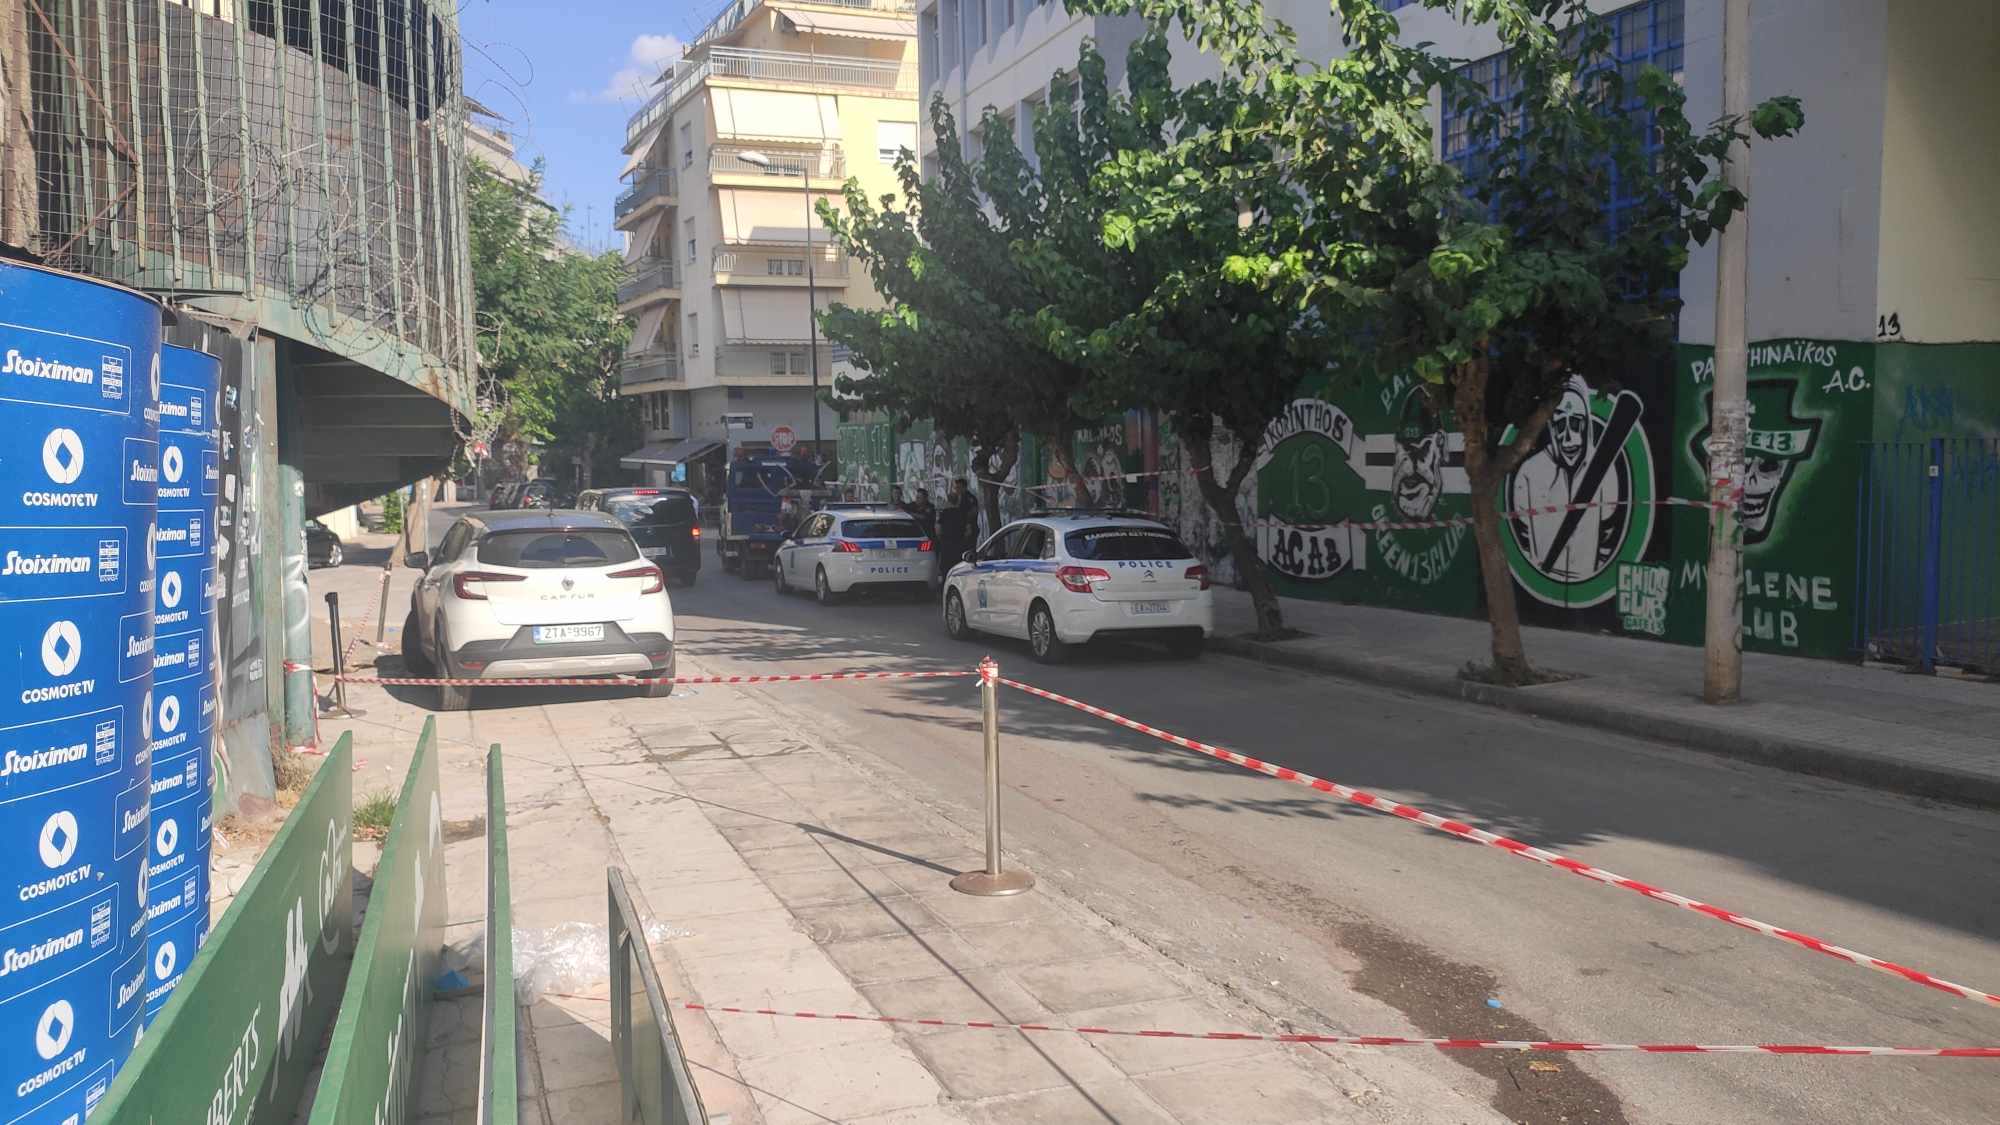 Σε επιφυλακή η αστυνομία γύρω από το “Απόστολος Νικολαΐδης” (ΦΩΤΟρεπορτάζ)